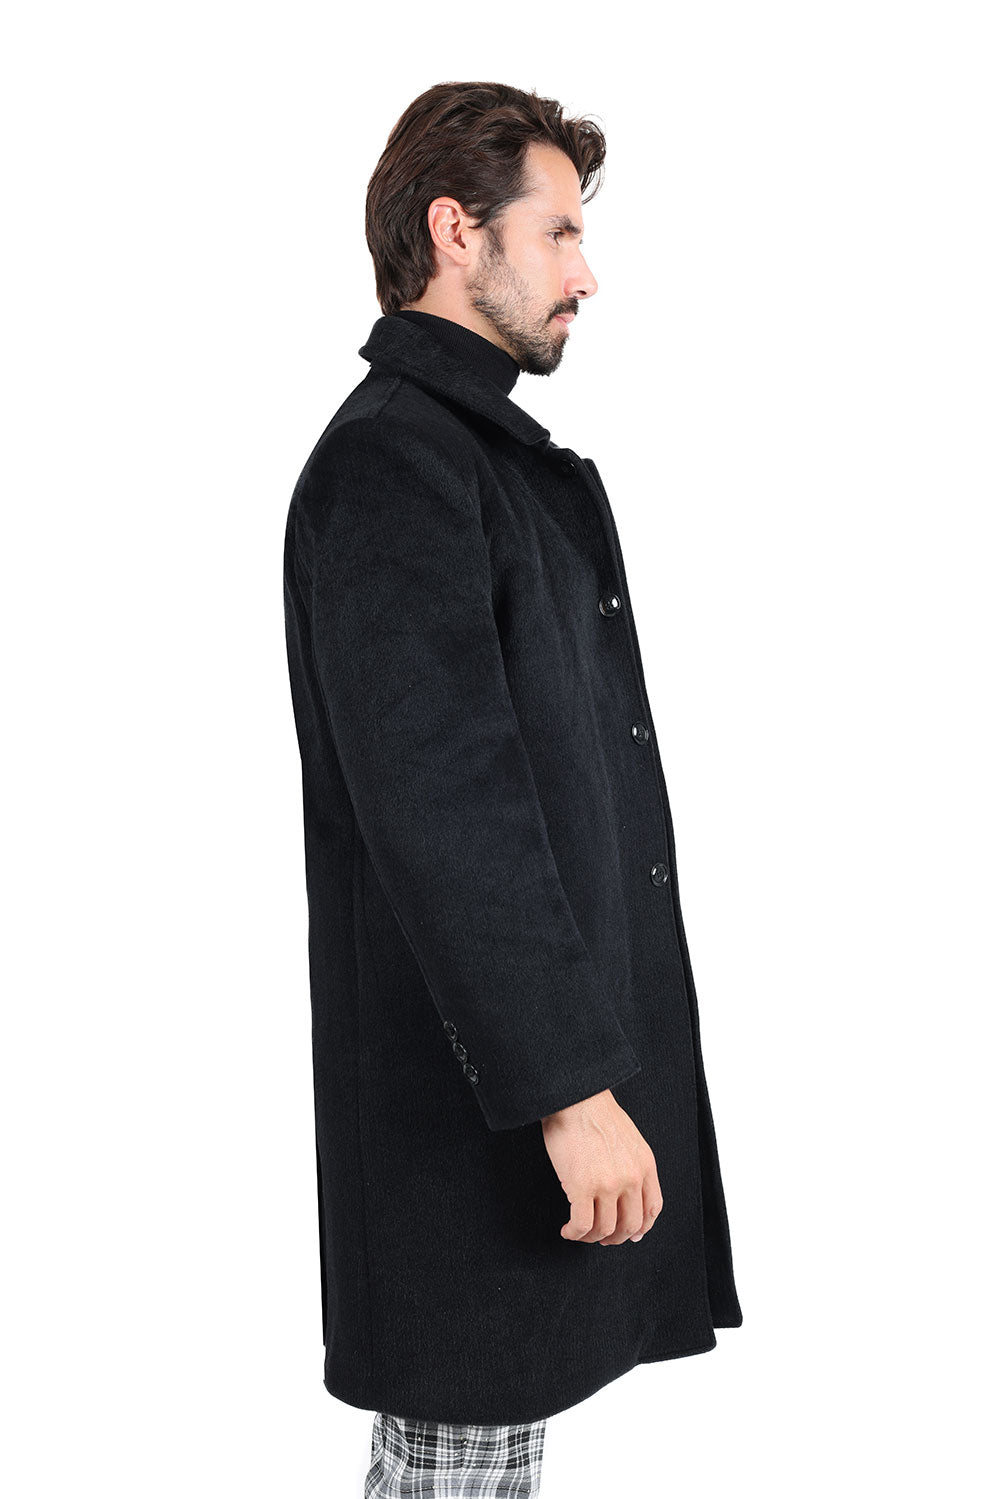 Barabas Men's Luxury Collared Over Coat Bal Collar Jacket 2JLW02 Black